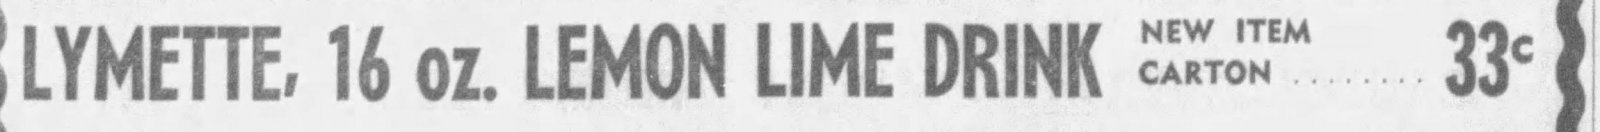 Lymette 1962_The_Albuquerque_Tribune_Thu__Feb_8__1962_.jpg